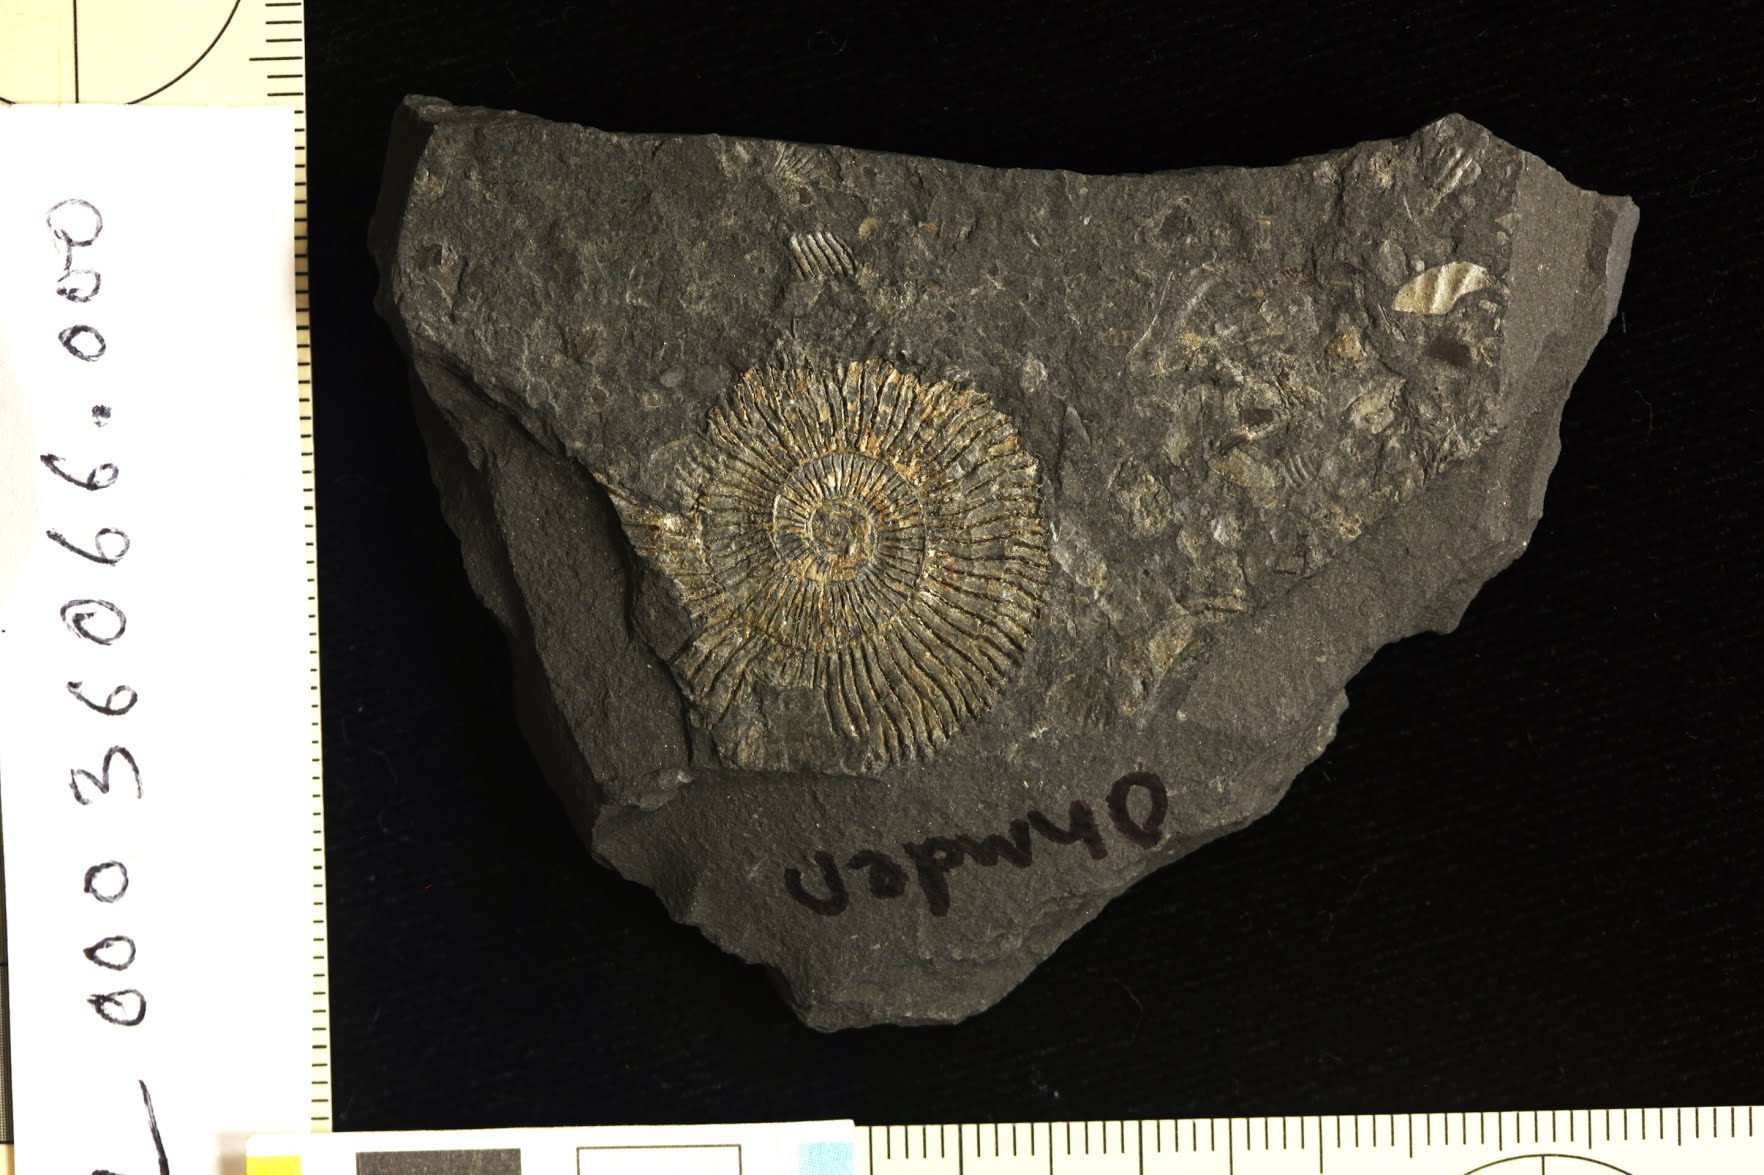 Fosilie amonitů Z lomu Ohmden, Posidonia břidlicový lagerstatte.